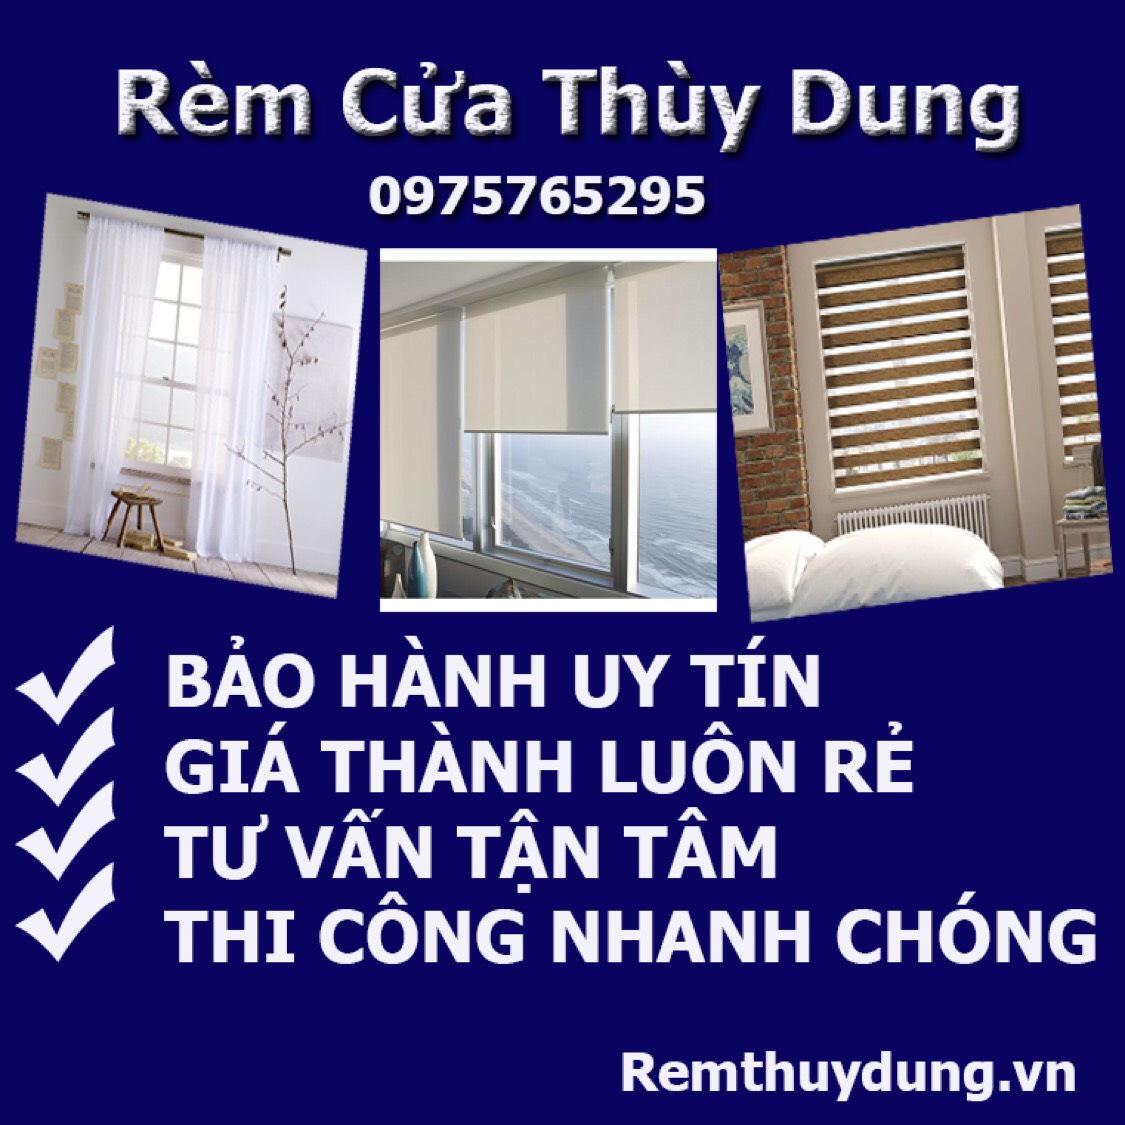 Địa chỉ mua rèm cửa tại phường Phúc tân, quận Hoàn Kiếm 0975765295